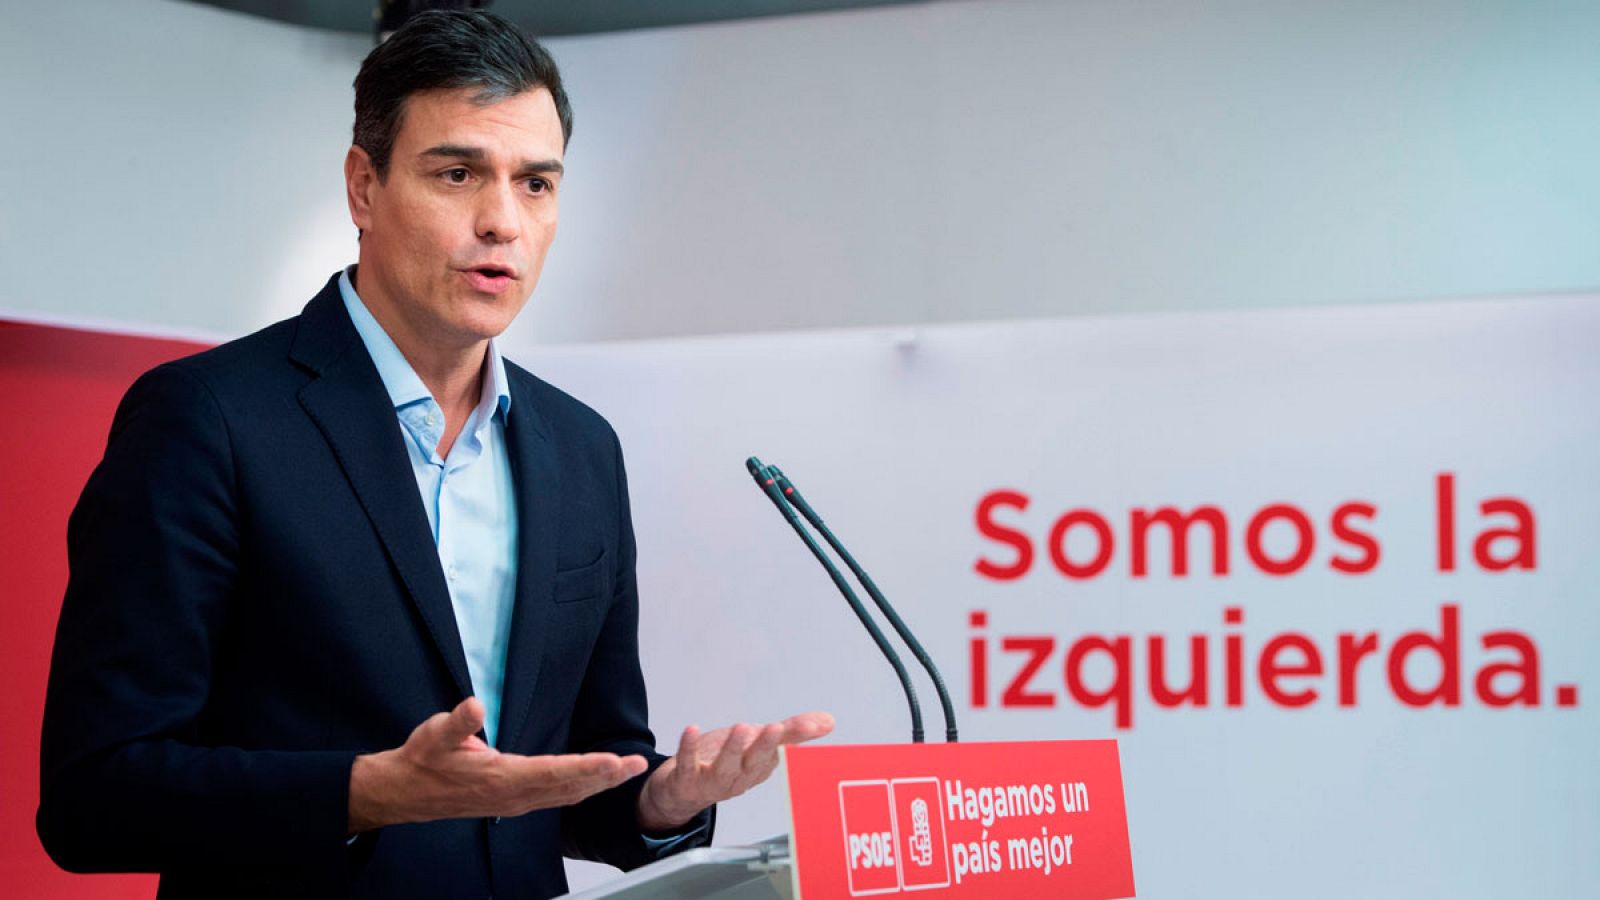 Los presupuestos alternativos del PSOE beneficiarían a 16,2 millones de personas, de los que 4 millones serían jóvenes